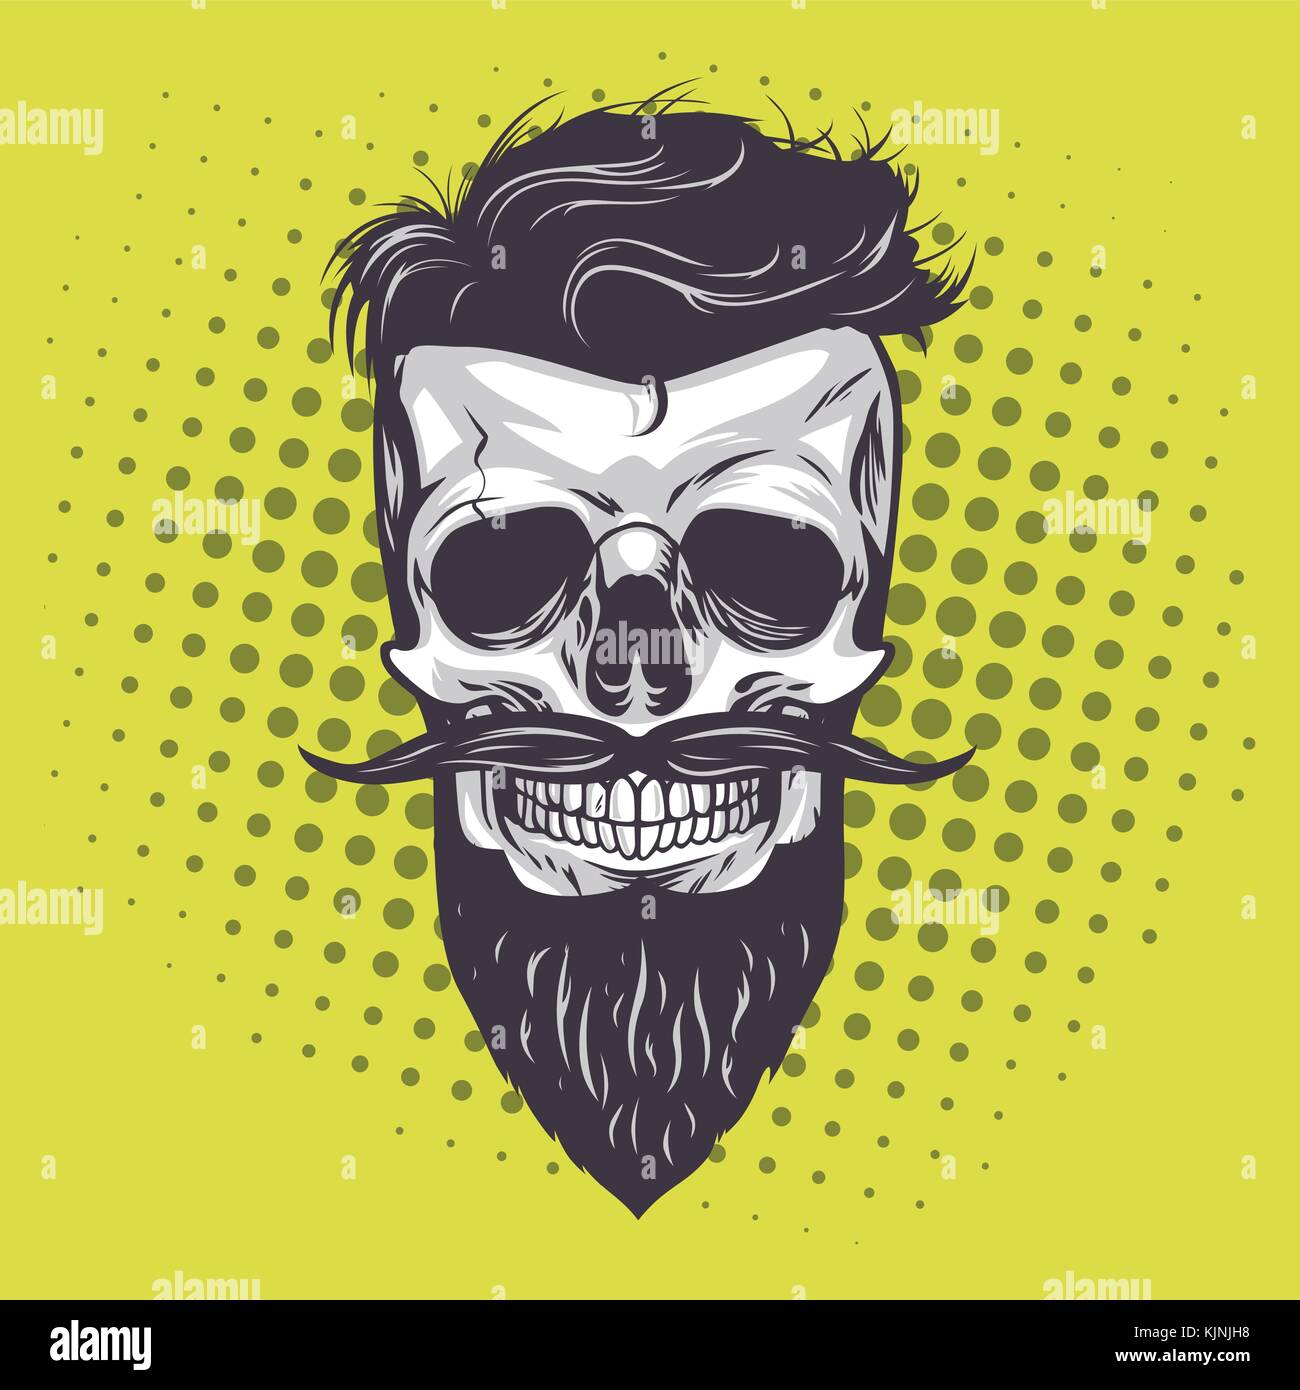 Hipster Skull Pop Art Vector Illustration Stock Vector